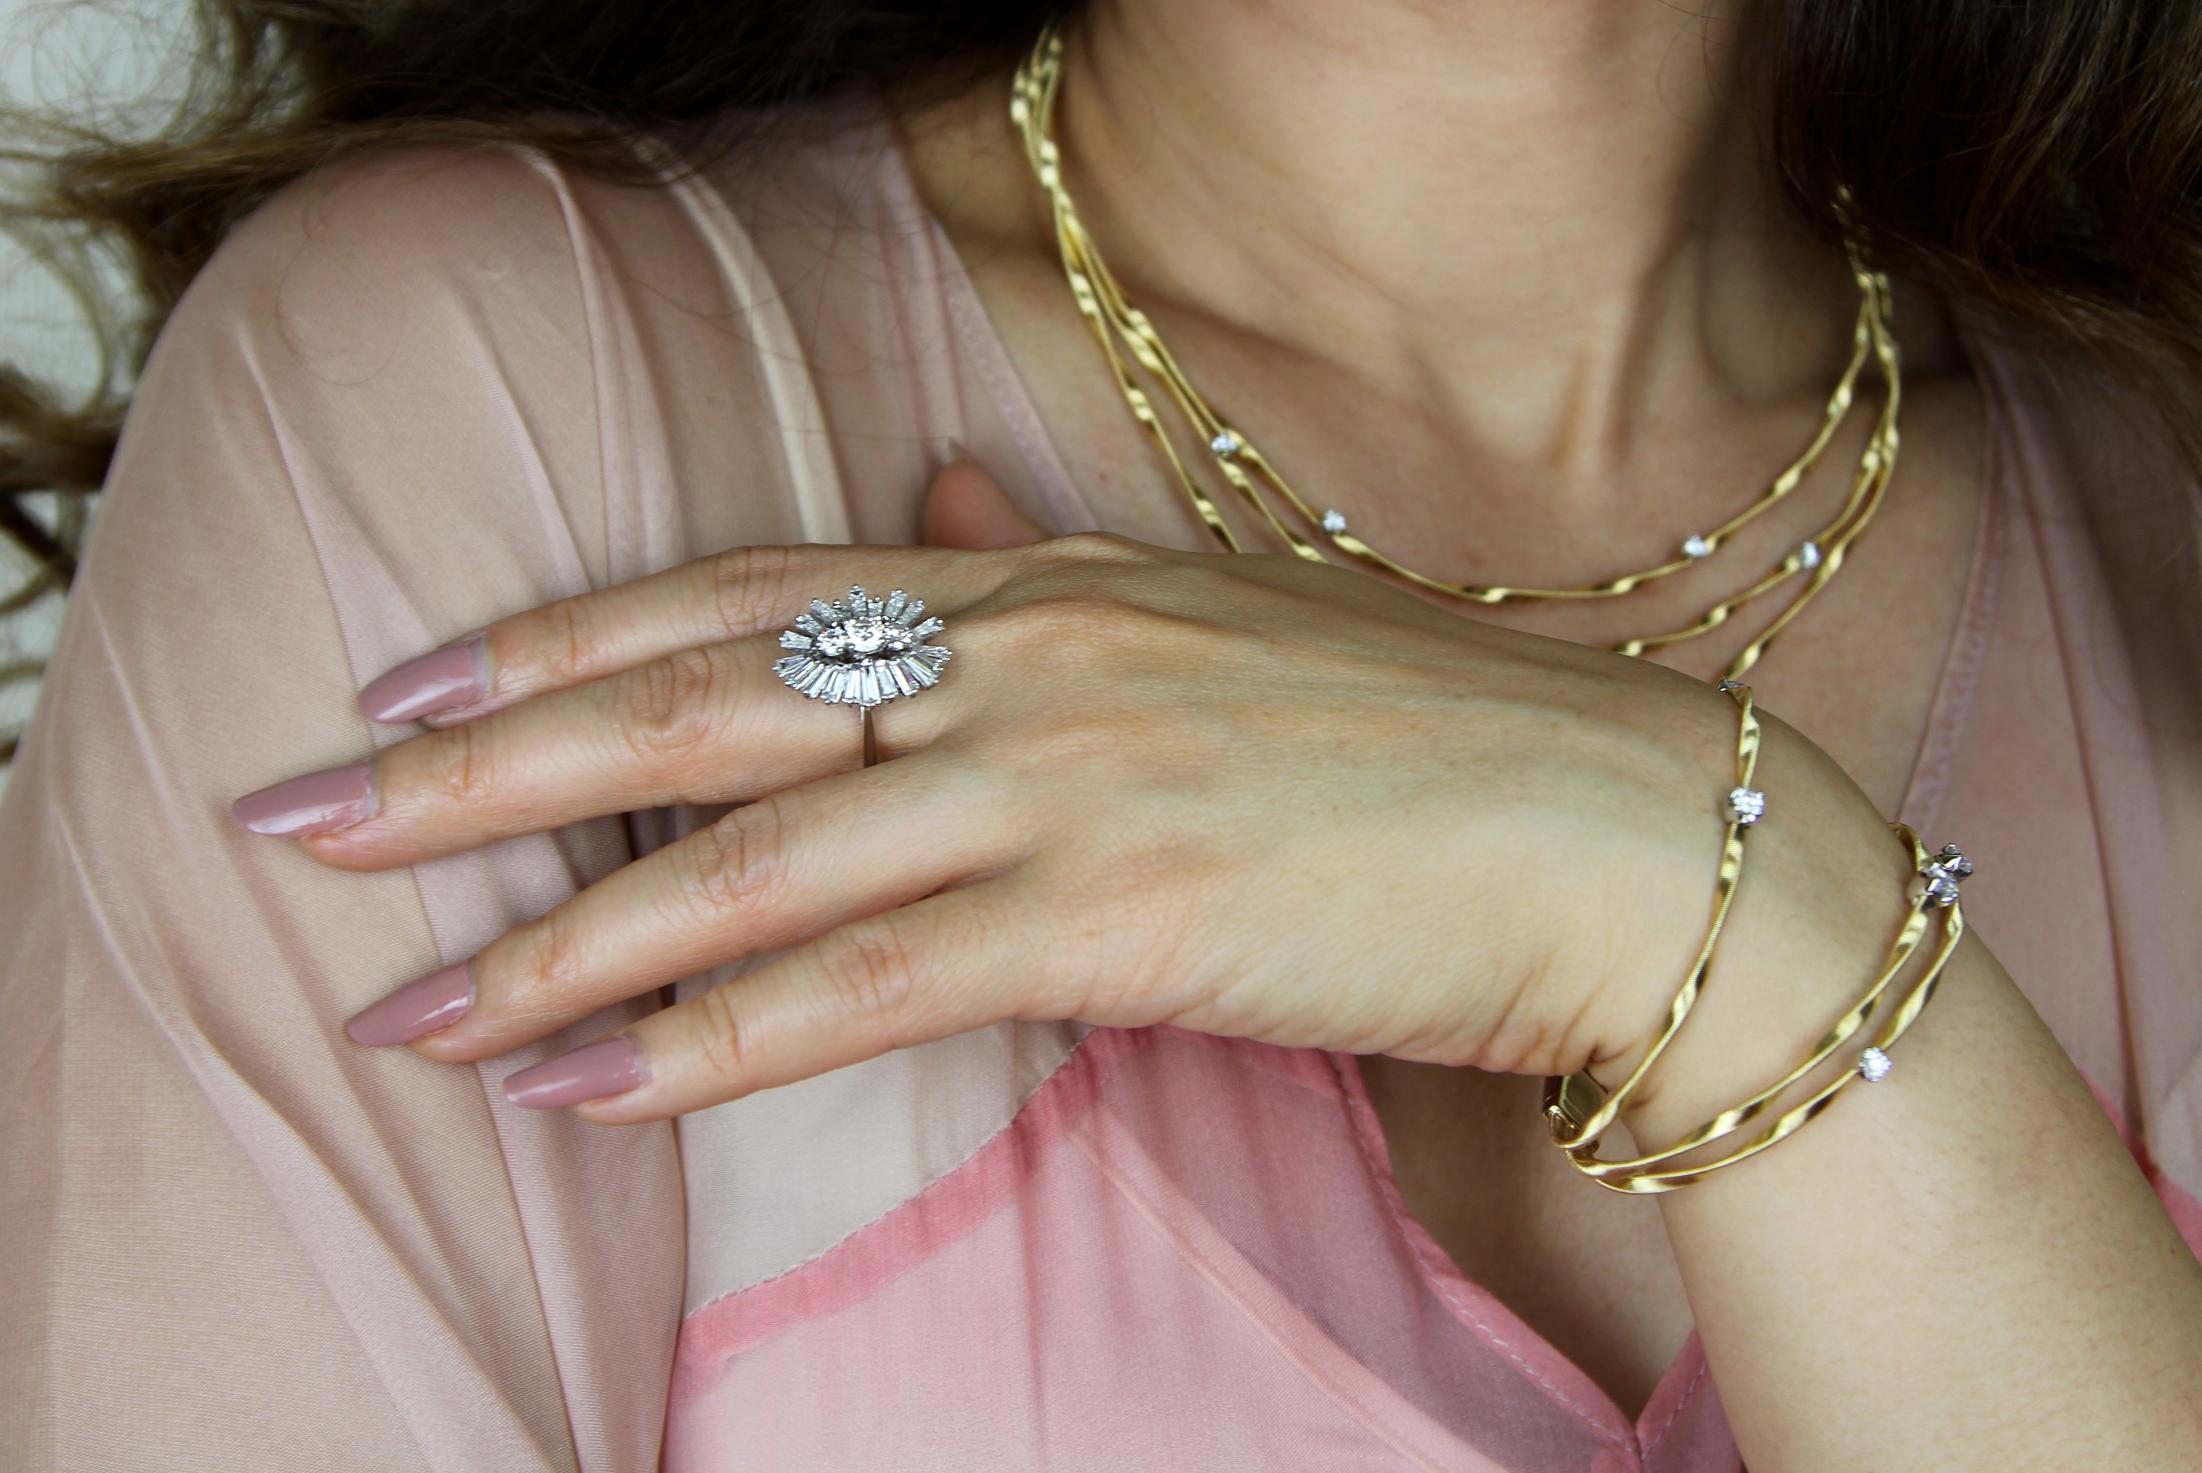 Diamant-Cocktailring aus 18 Karat Weißgold. Das feminine und zarte Design vermittelt ein raffiniertes Gefühl von Anmut und Stärke, das von ruhigem Selbstbewusstsein zeugt. Diamanten zeichnen fließend die Kurven dieses glänzenden Designs.

Ein